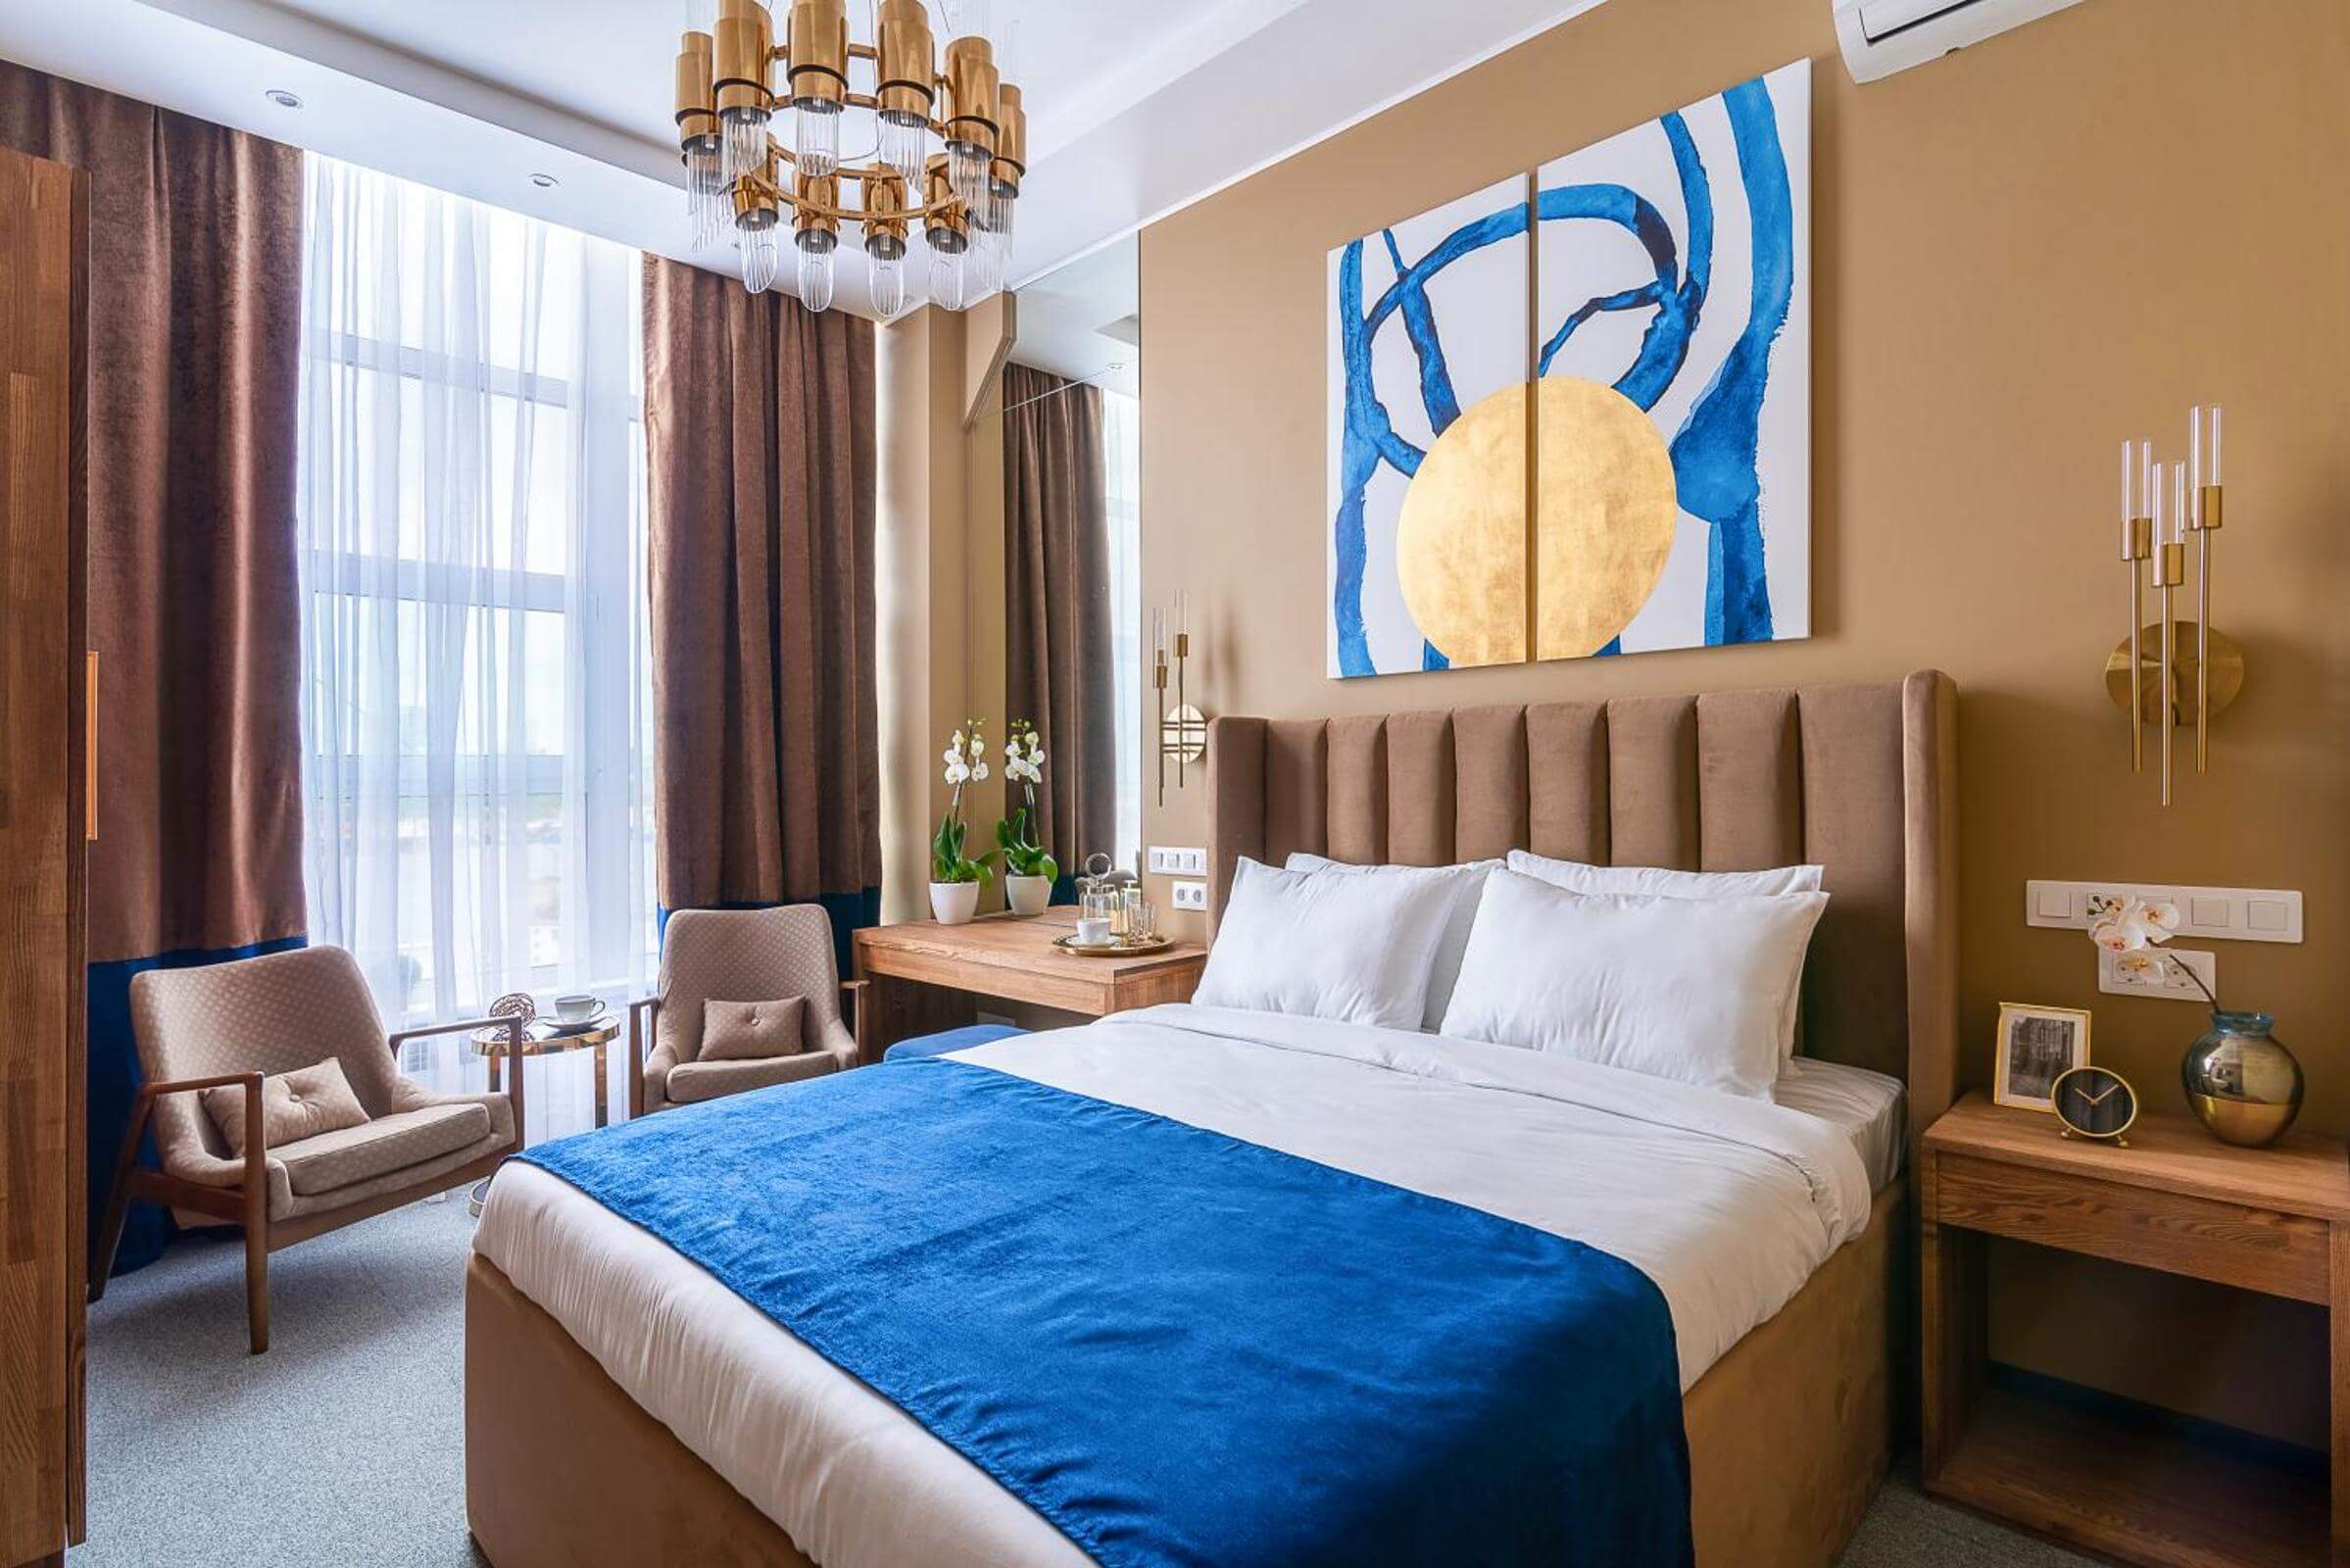 Стену украшает оригинальное "современное искусство", кровать застелена синим саше.